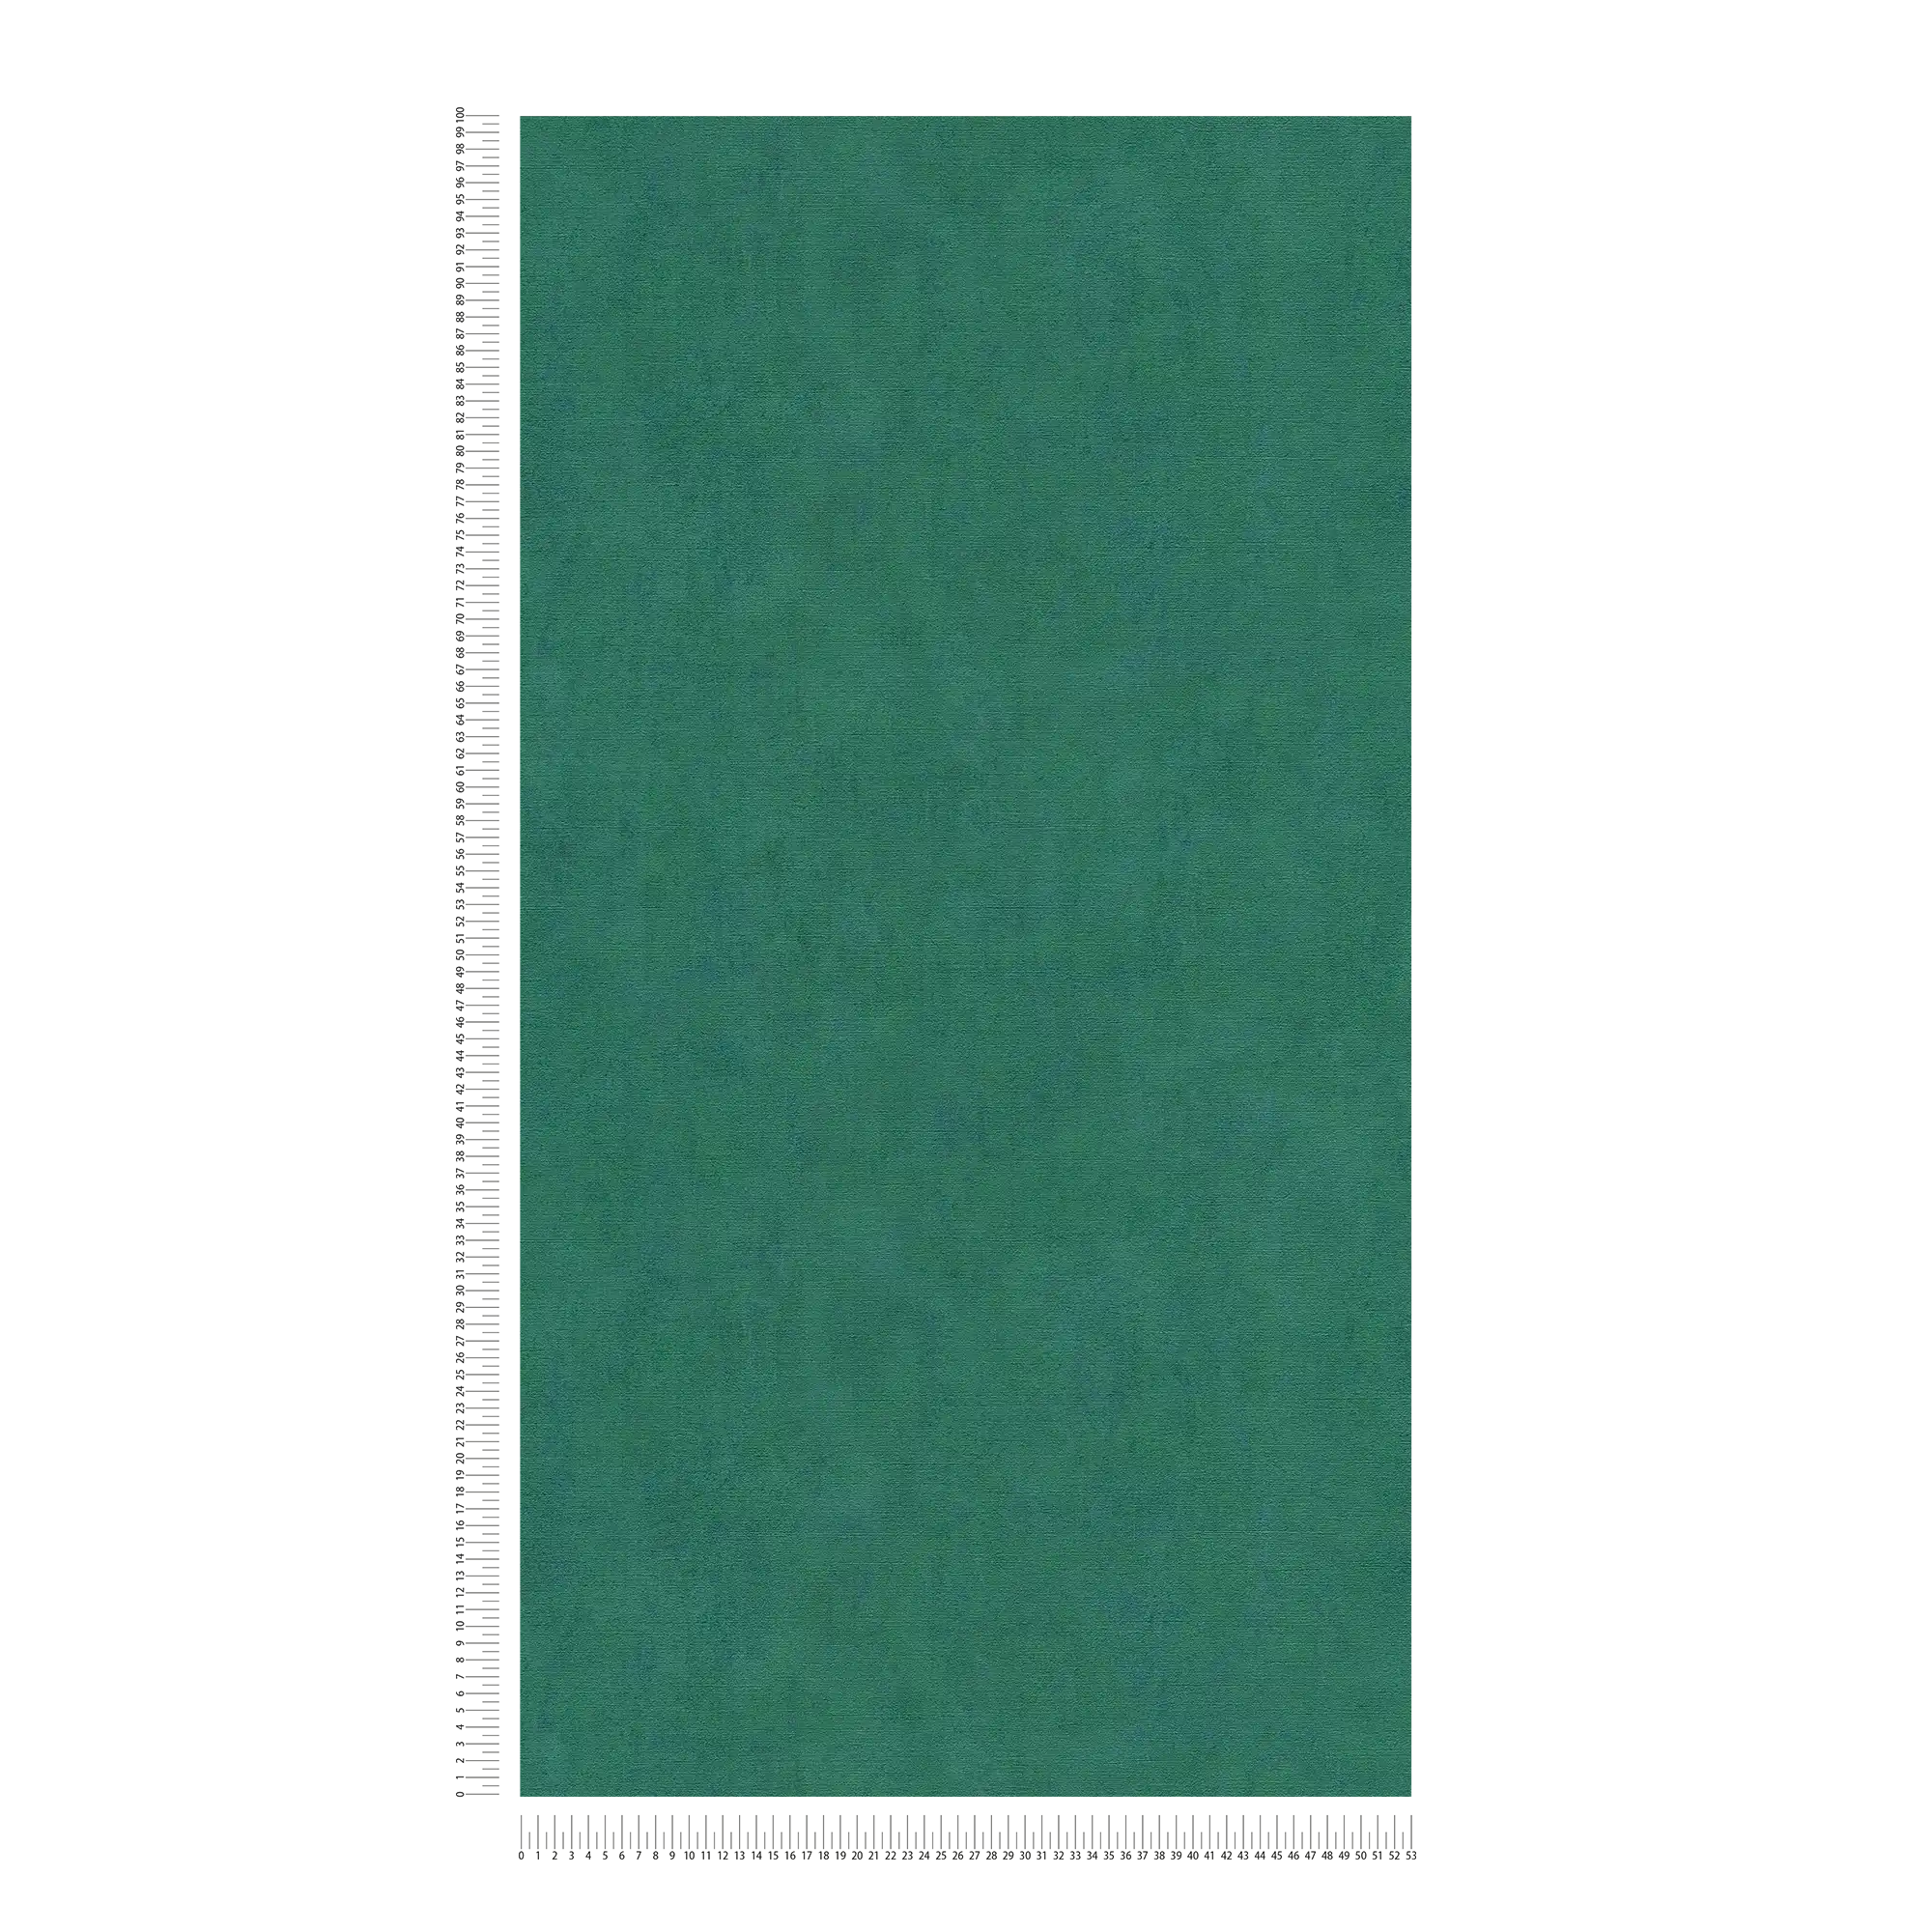             Papier peint vert émeraude chiné avec effet métallique bleu - bleu, vert
        